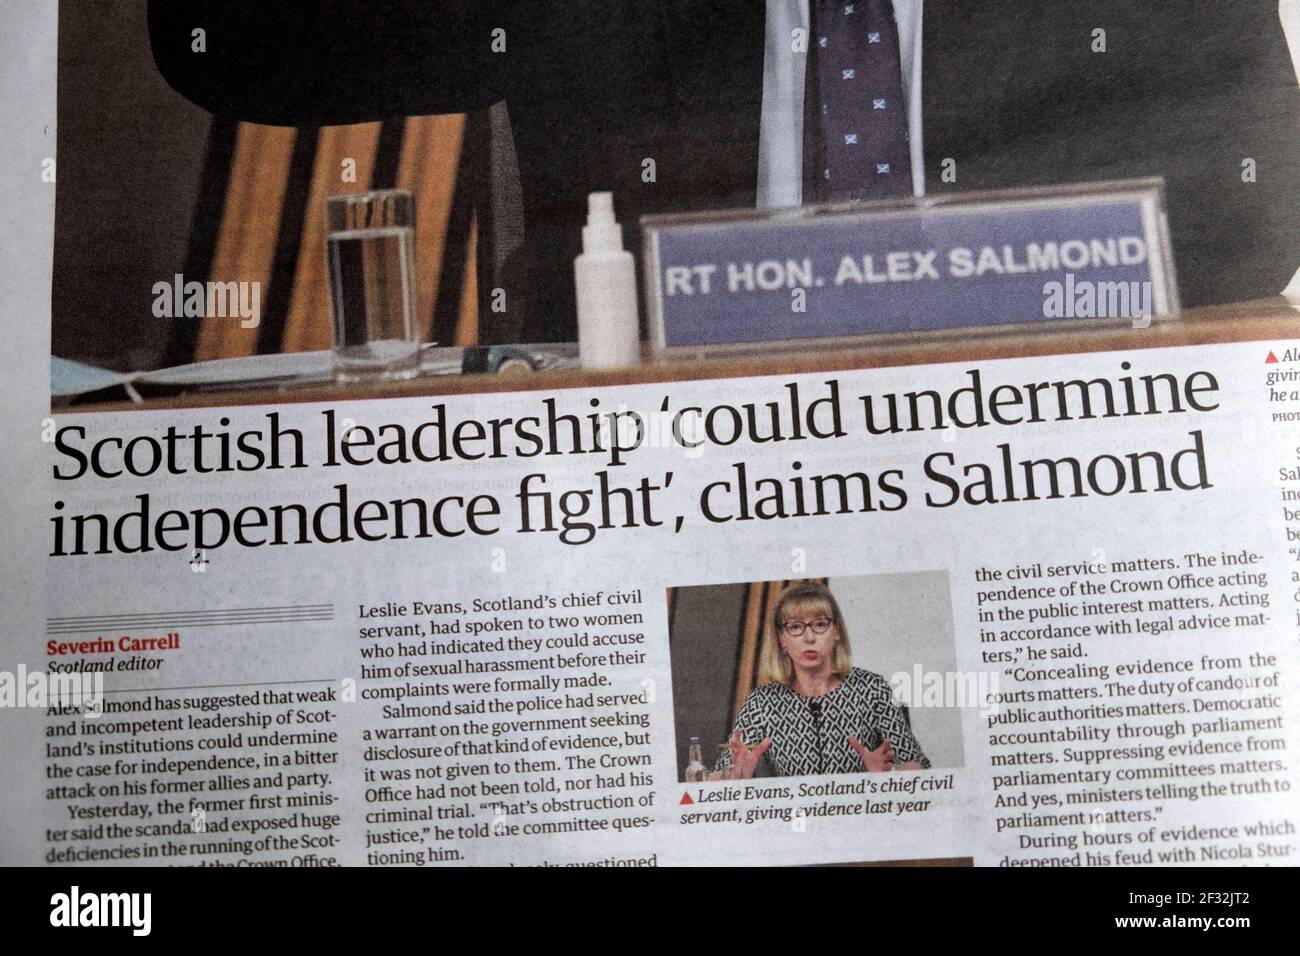 "El liderazgo escocés "podría socavar la lucha por la independencia", afirma Salmond' Guardian periódico titular artículo político el 27 de febrero de 2021 Reino Unido Foto de stock